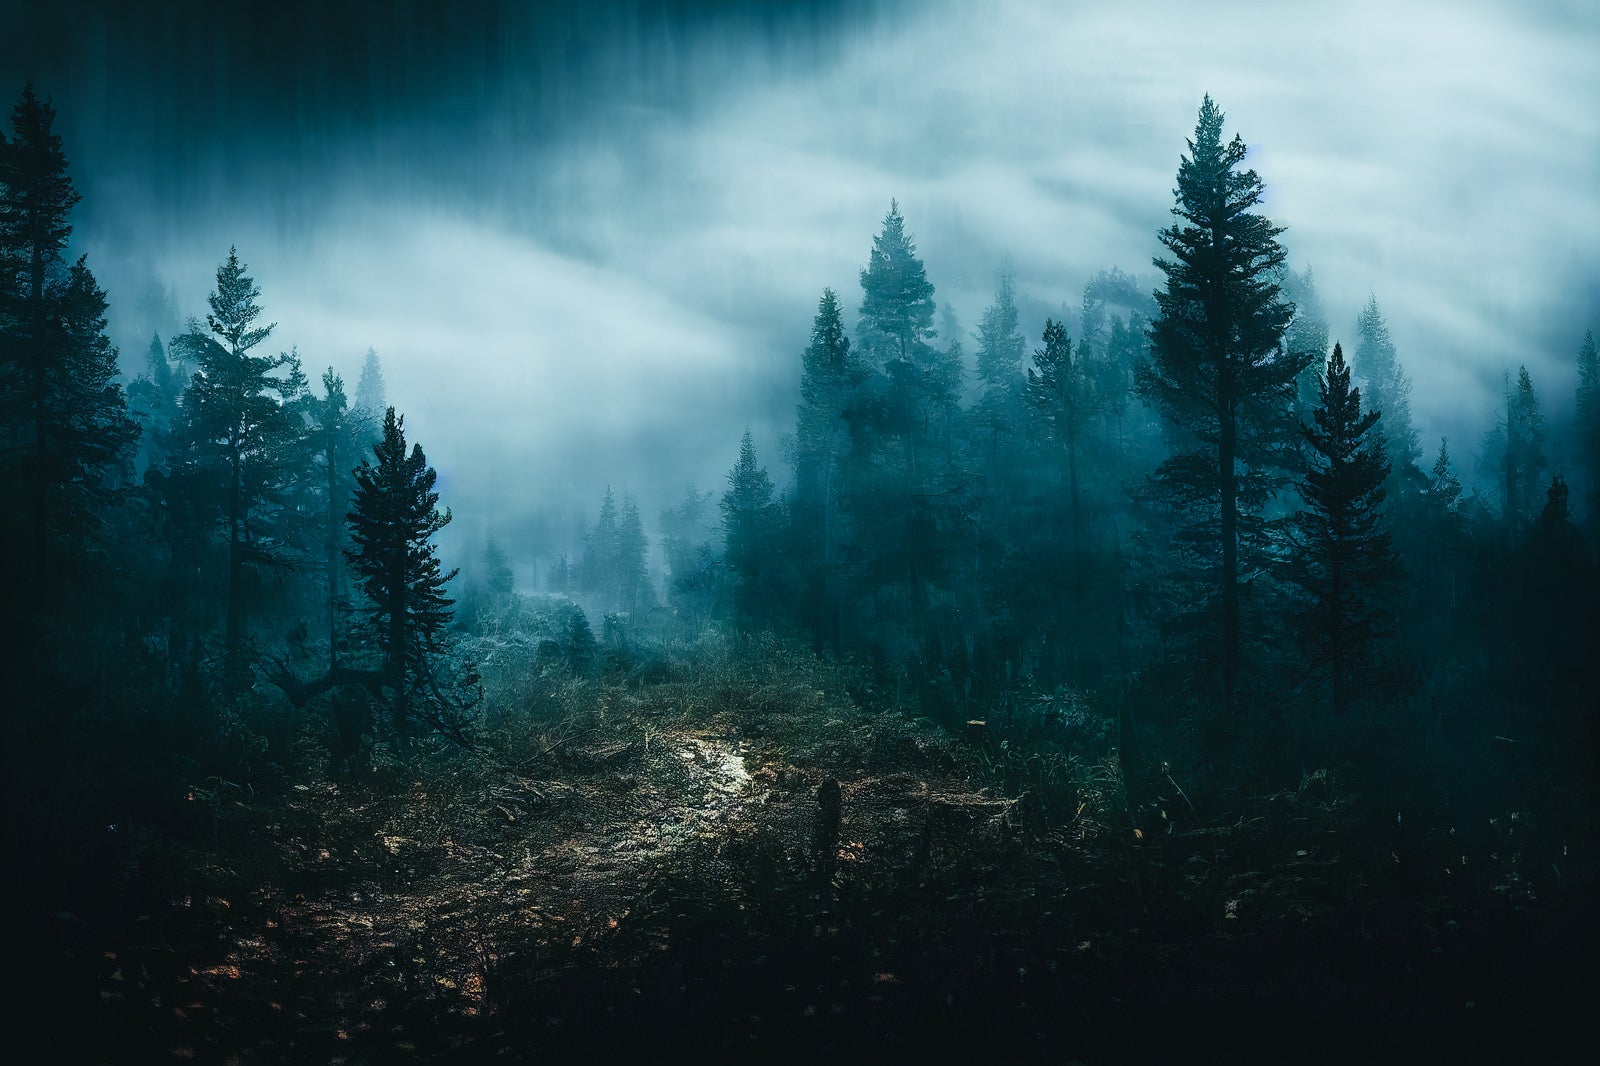 「濃霧に包まれた出口の見えない登山道」の写真